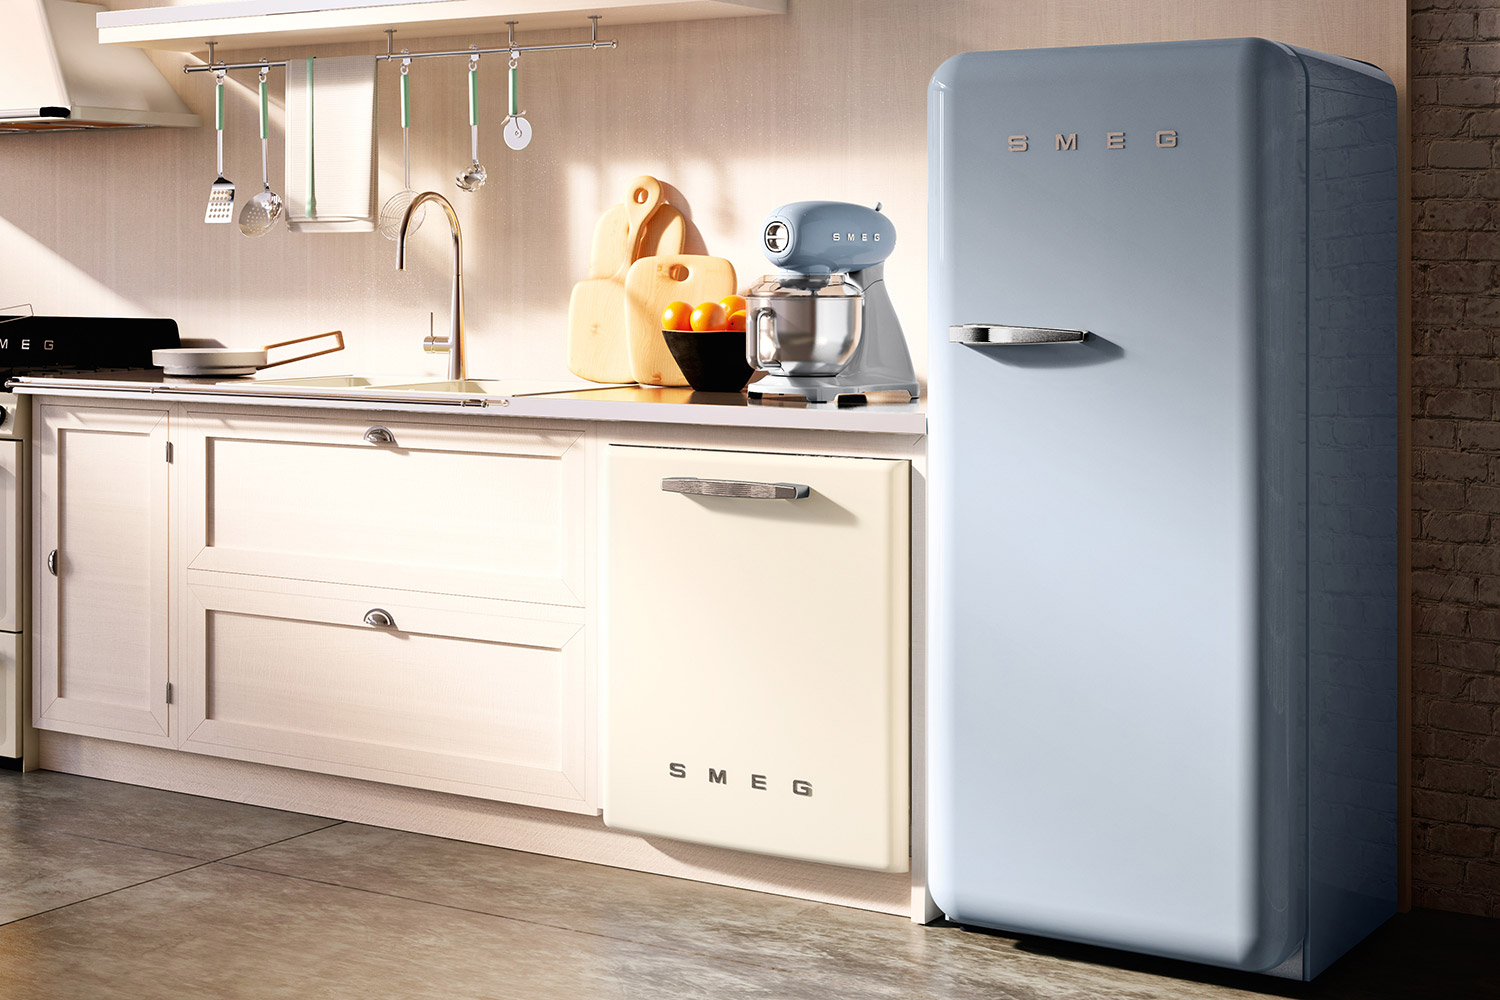 smeg introduces a retro dishwasher and bigger fridge 50s style